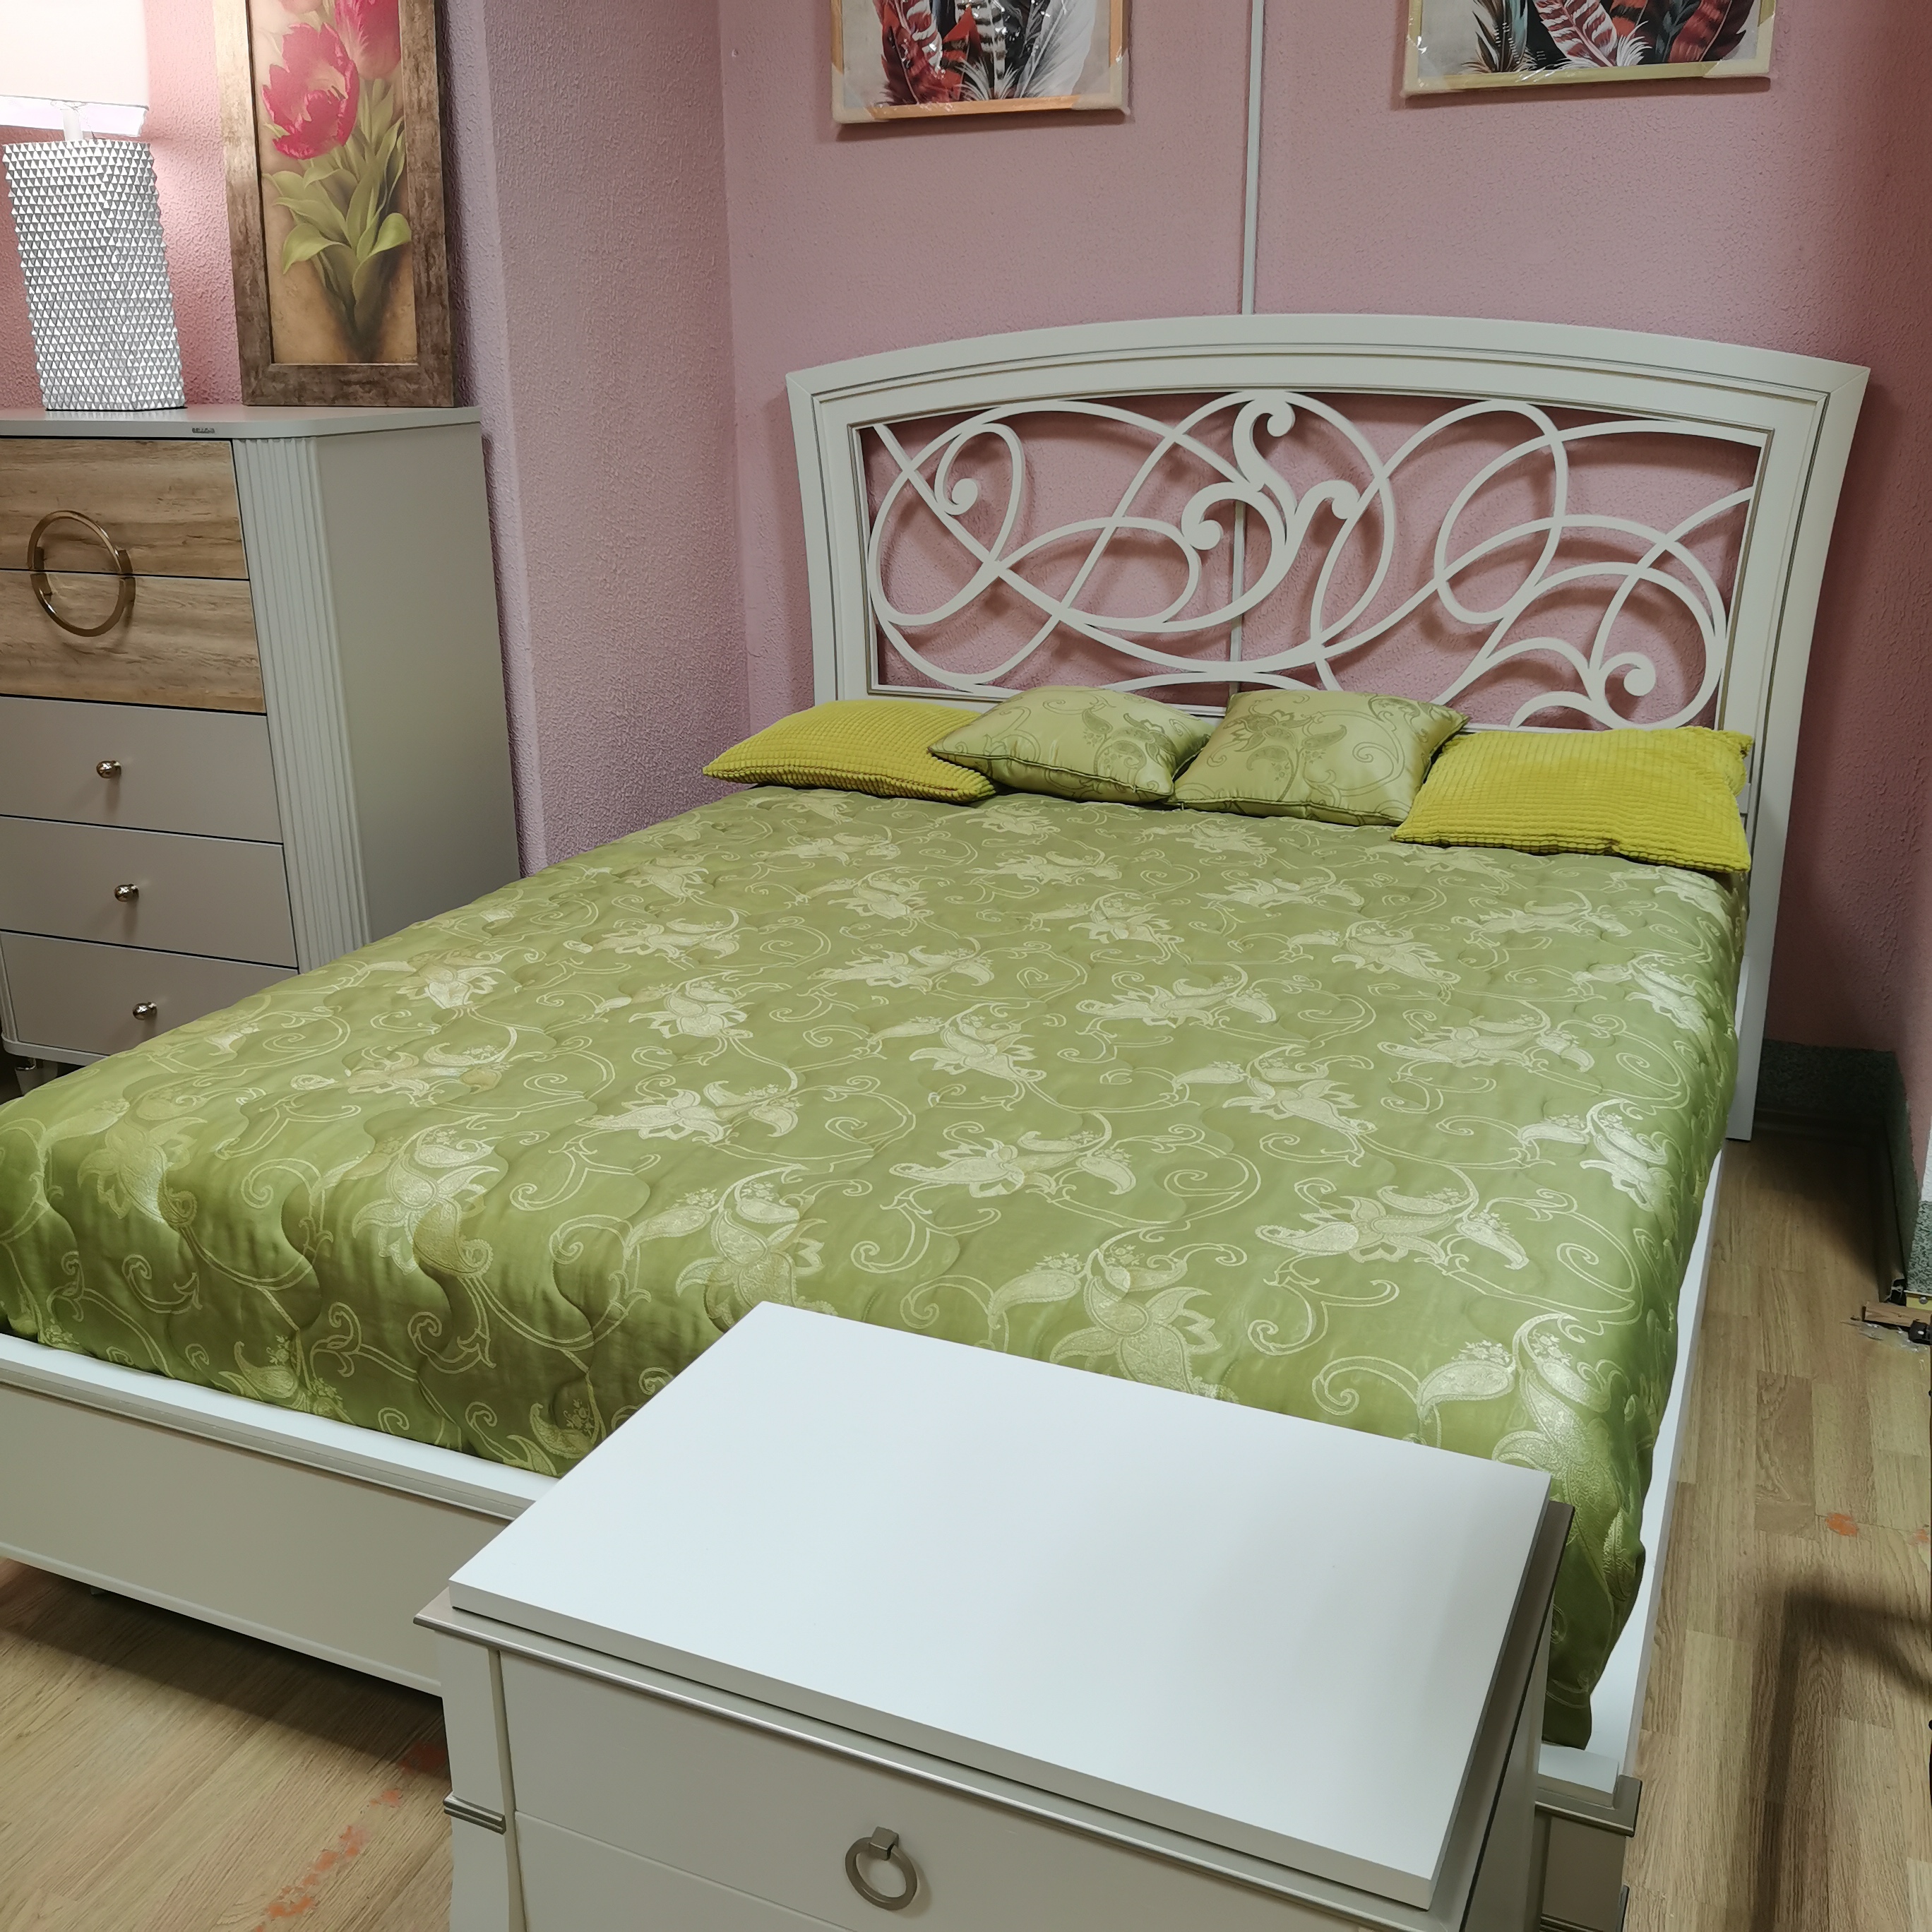 Кровать Valeria, двуспальная, 160x200 см, изголовье Toscana с резьбой, цвет: lino (00470184/00470182) экспо00470184+00470182